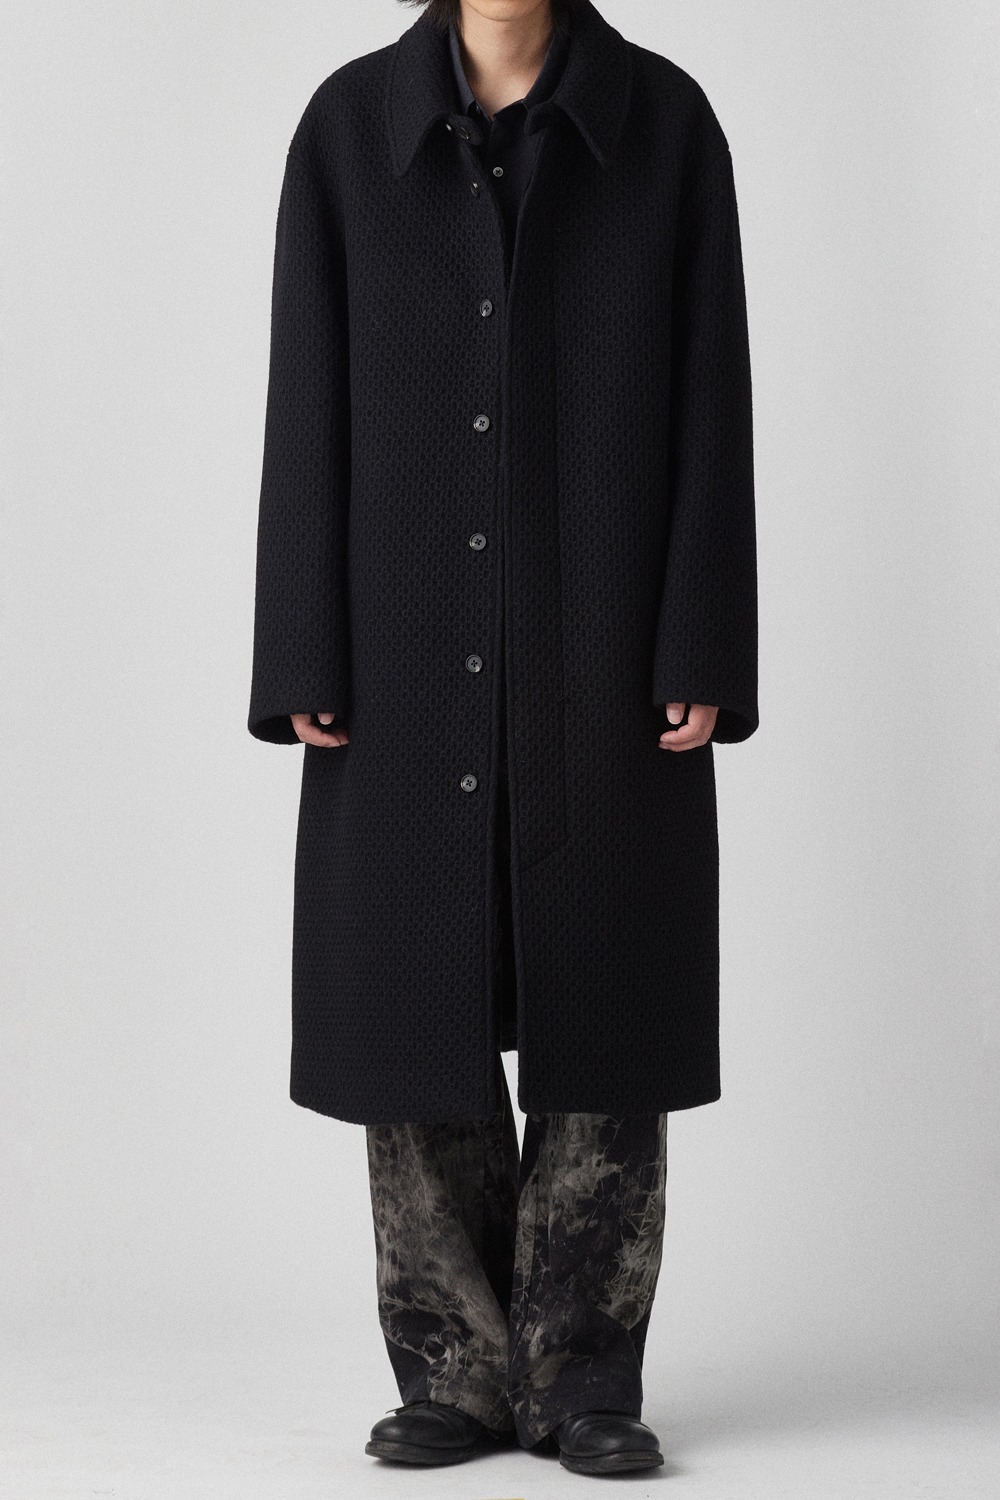 [Obscura Exclusive] Balmacaan Coat V2 Tweed Black